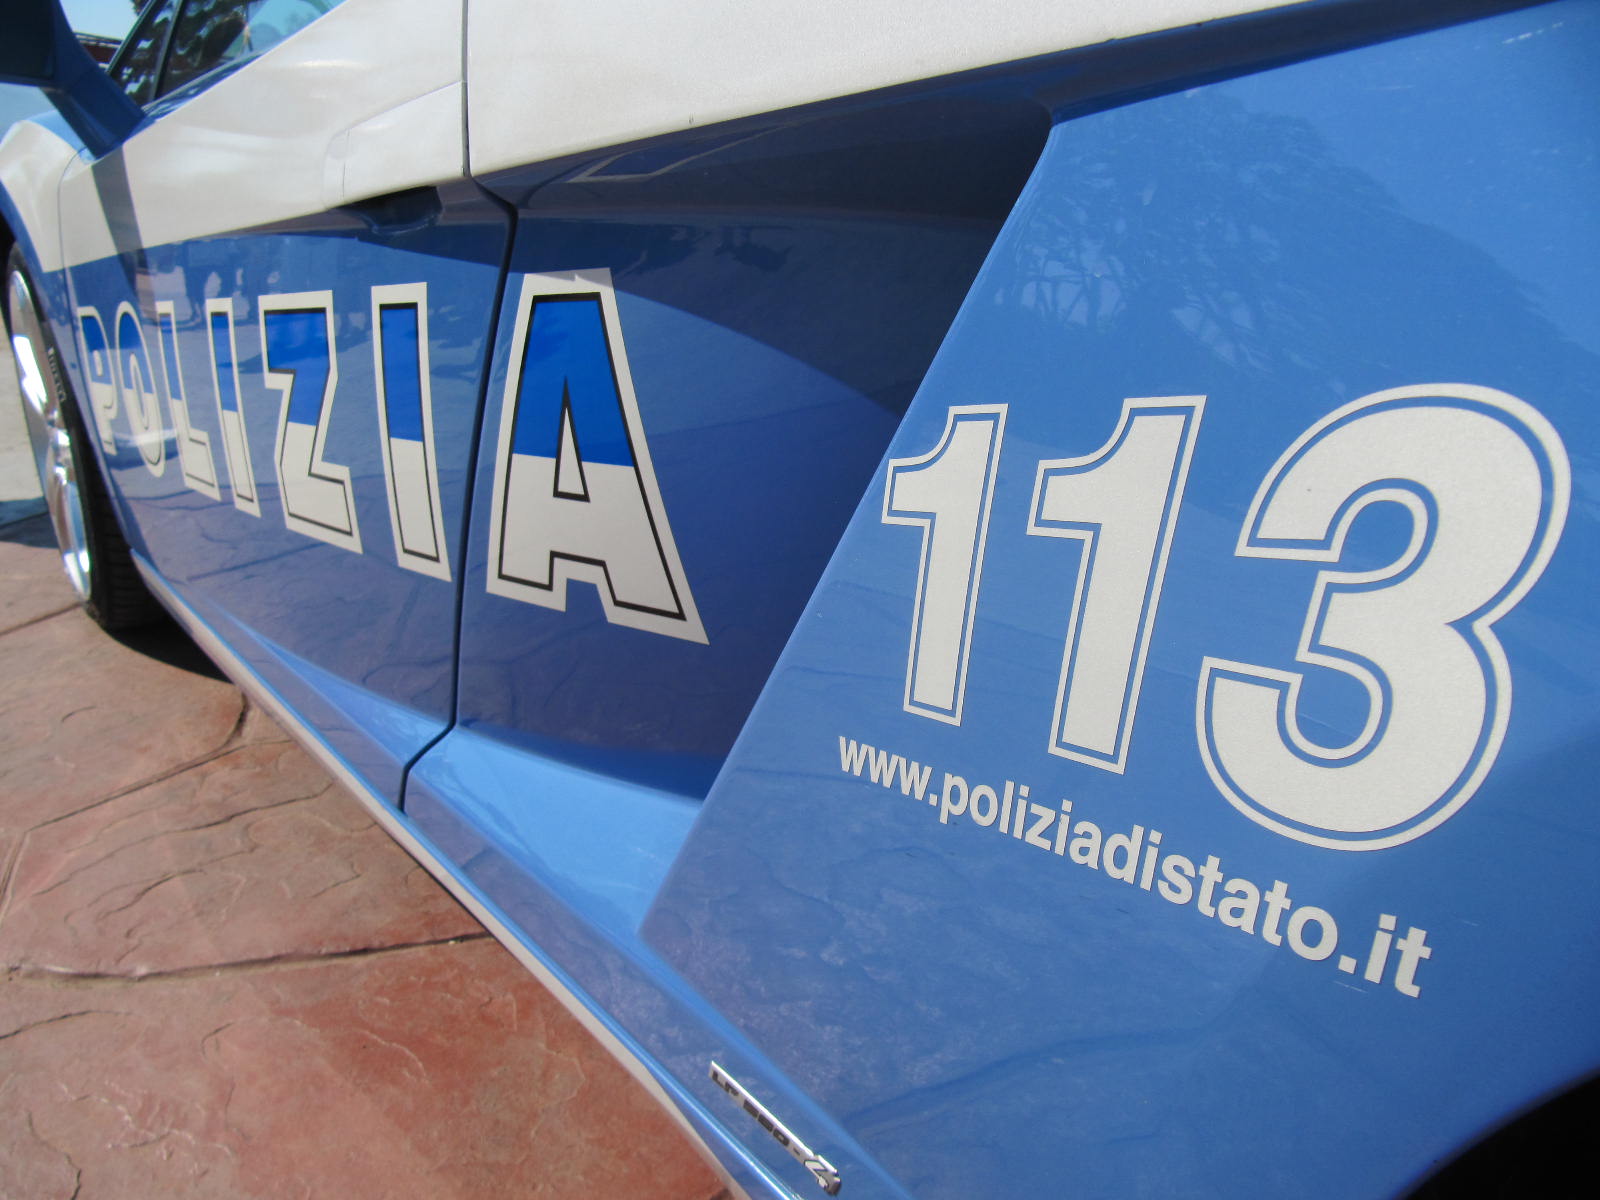 Catania, la Polizia di Stato protesta: “Rinunciamo ai diritti più elementari, impossibile insistere così”